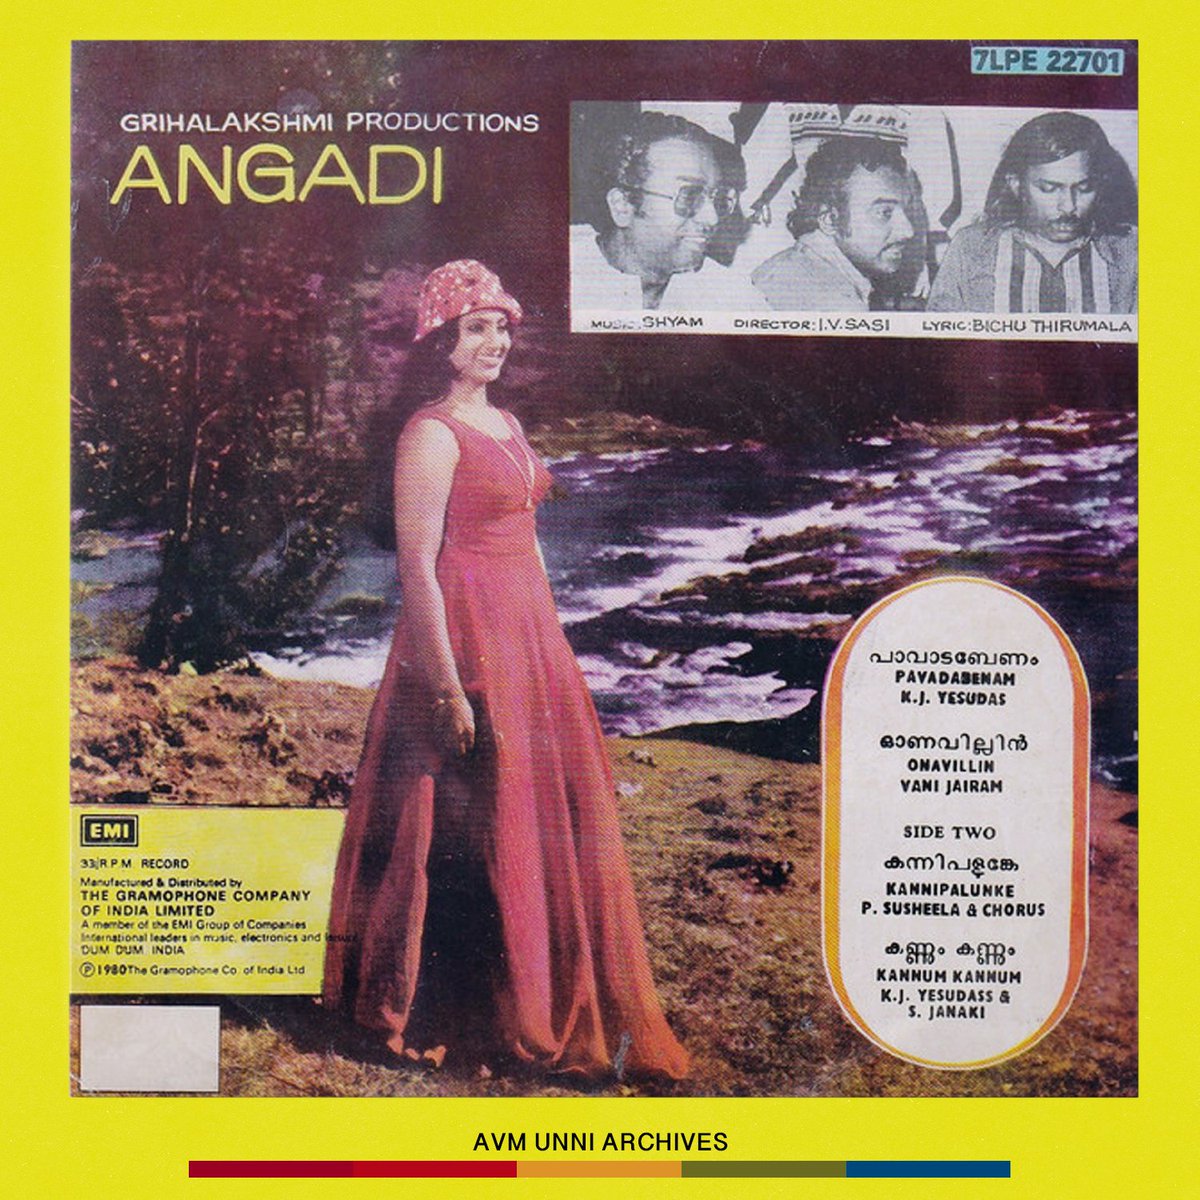 അങ്ങാടി / April 1980

#malayalamcinema #angadi #jayan #ivsasi #seema #avmunniarchives #vinylrecord #vinyl #label #music #mollywood